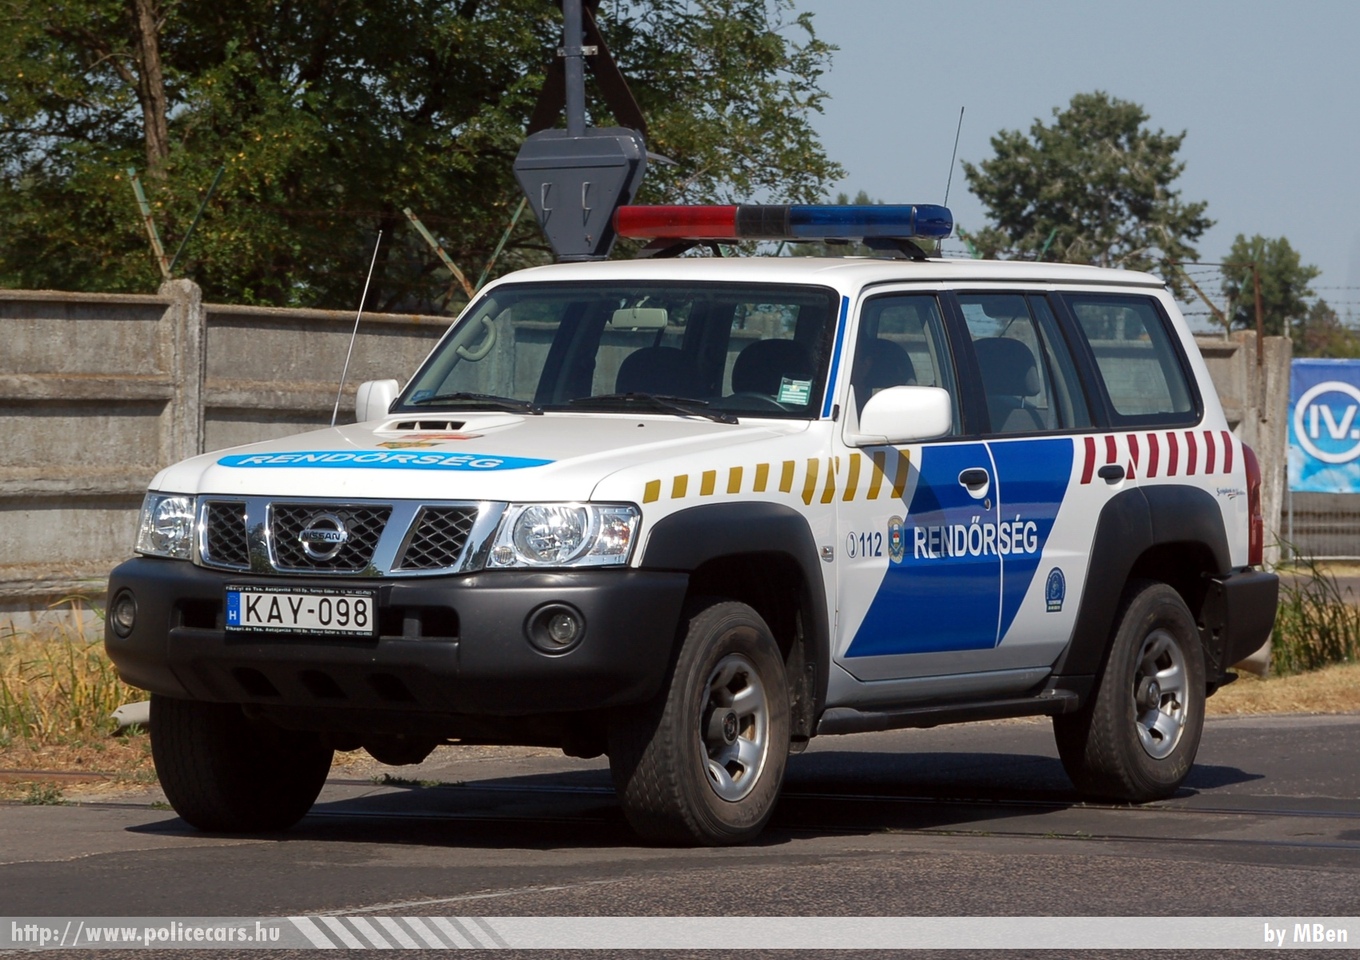 Nissan Patrol, fotó: MBen
Keywords: magyar Magyarország rendőr rendőrautó rendőrség Hungary hungarian police policecar KAY-098